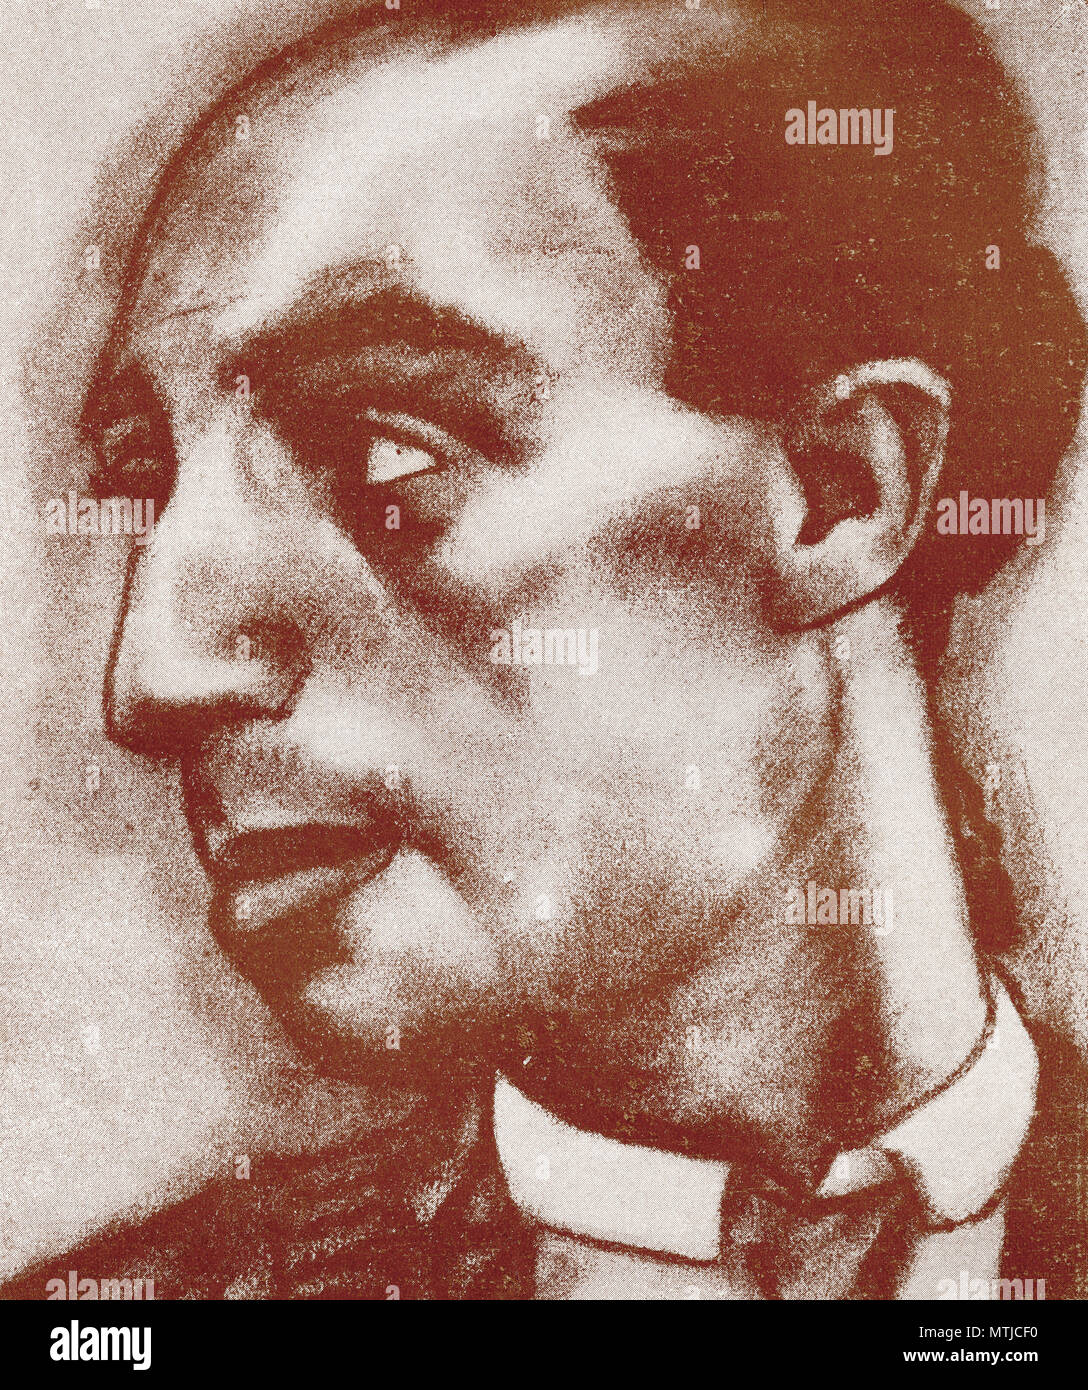 Rafael Gómez Ortega, 1882 - 1960, auch bekannt als El Gallo. Gefeierte spanische Stierkämpfer. Stockfoto